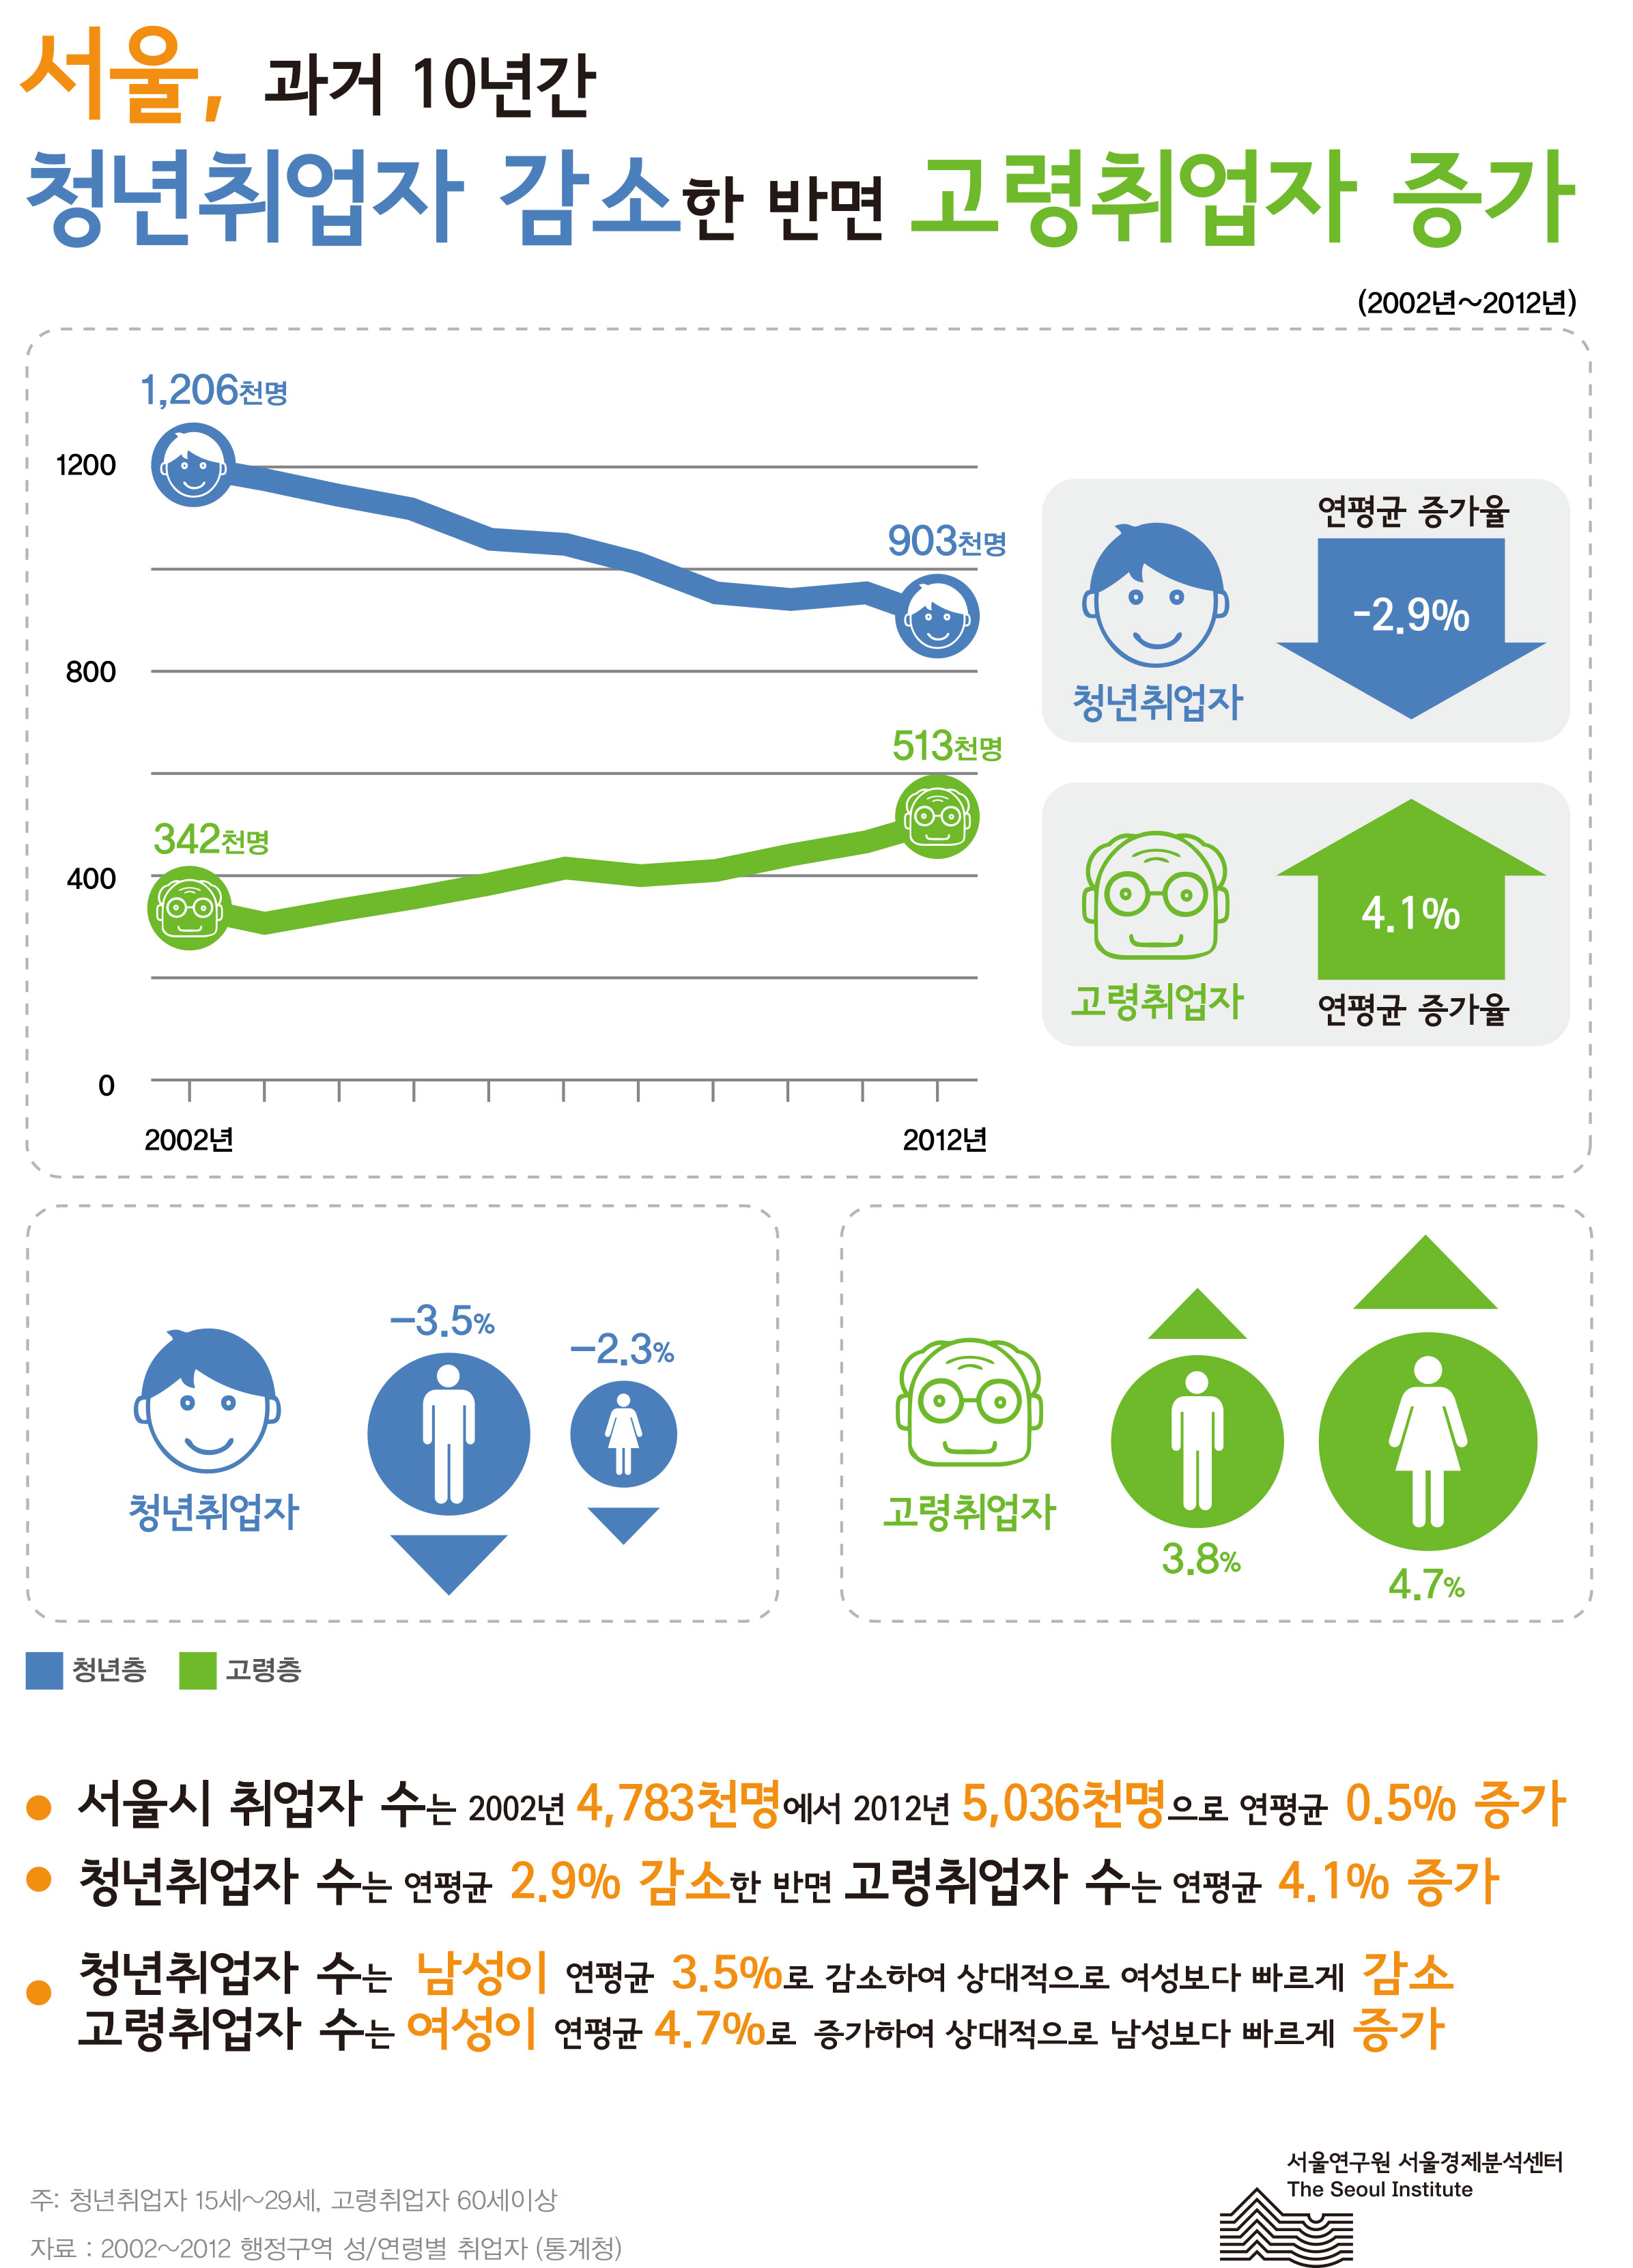 서울, 과거 10년간 청년취업자 감소한 반면 고령취업자 증가 서울인포그래픽스 제35호 2013년 5월 27일 서울시 취업자 수는 2002년 4,789천명에서 2012년 5,036천명으로 연평균 0.5% 증가, 청년취업자 수는 연평균 2.9% 감소한 반면 고령취업자 수는 연평균 4.1% 증가, 청년취업자 수는 남성이 연평균 3.5%로 감소하여 상대적으로 여성보다 빠르게 감소함으로 정리될 수 있습니다. 인포그래픽으로 제공되는 그래픽은 하단에 표로 자세히 제공됩니다.